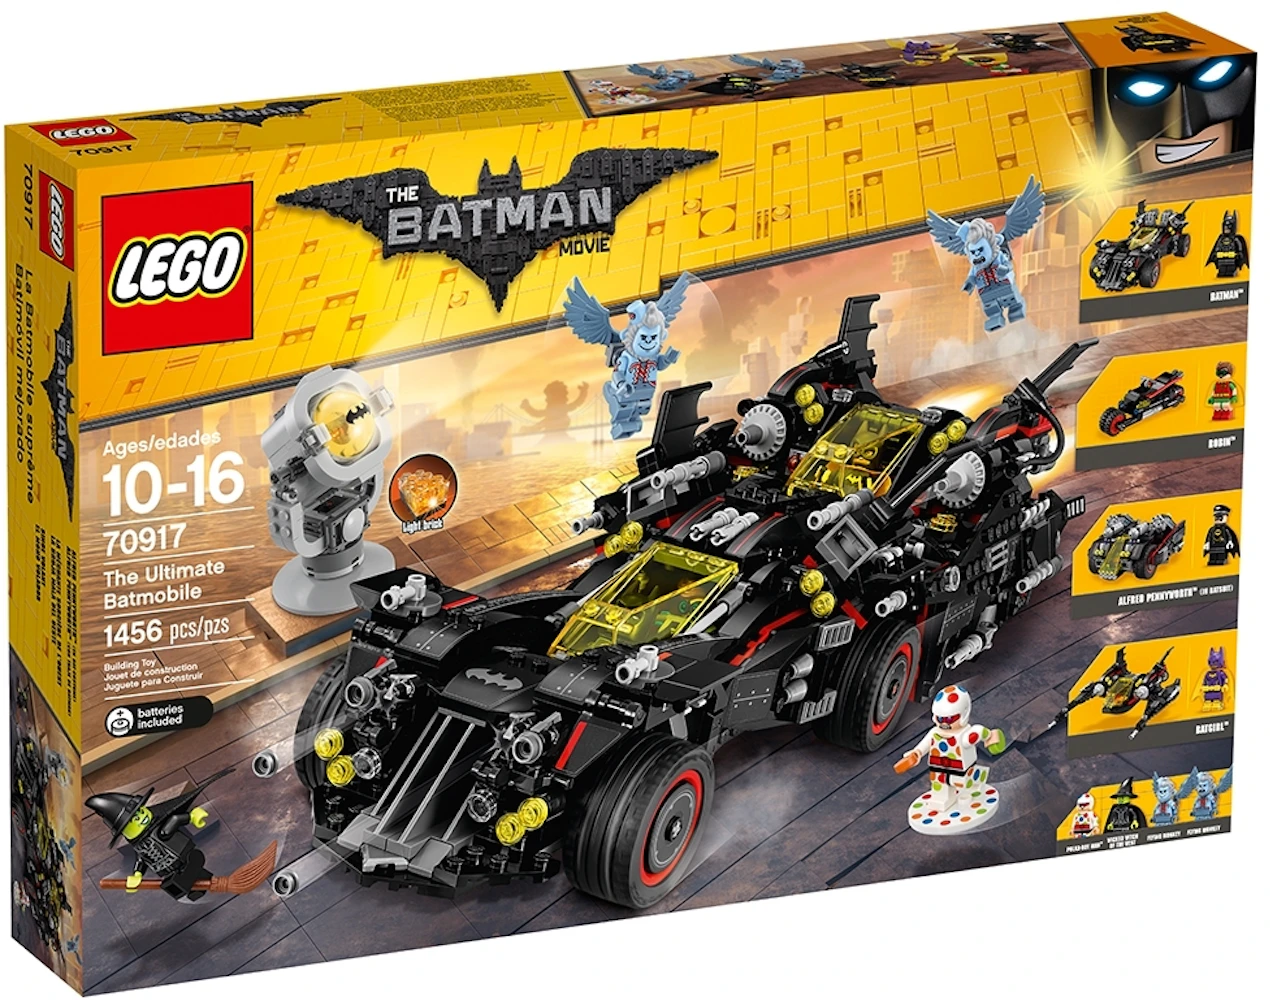 Goneryl Jeg spiser morgenmad ærme LEGO The Lego Batman Movie The Ultimate Batmobile Set 70917 - US